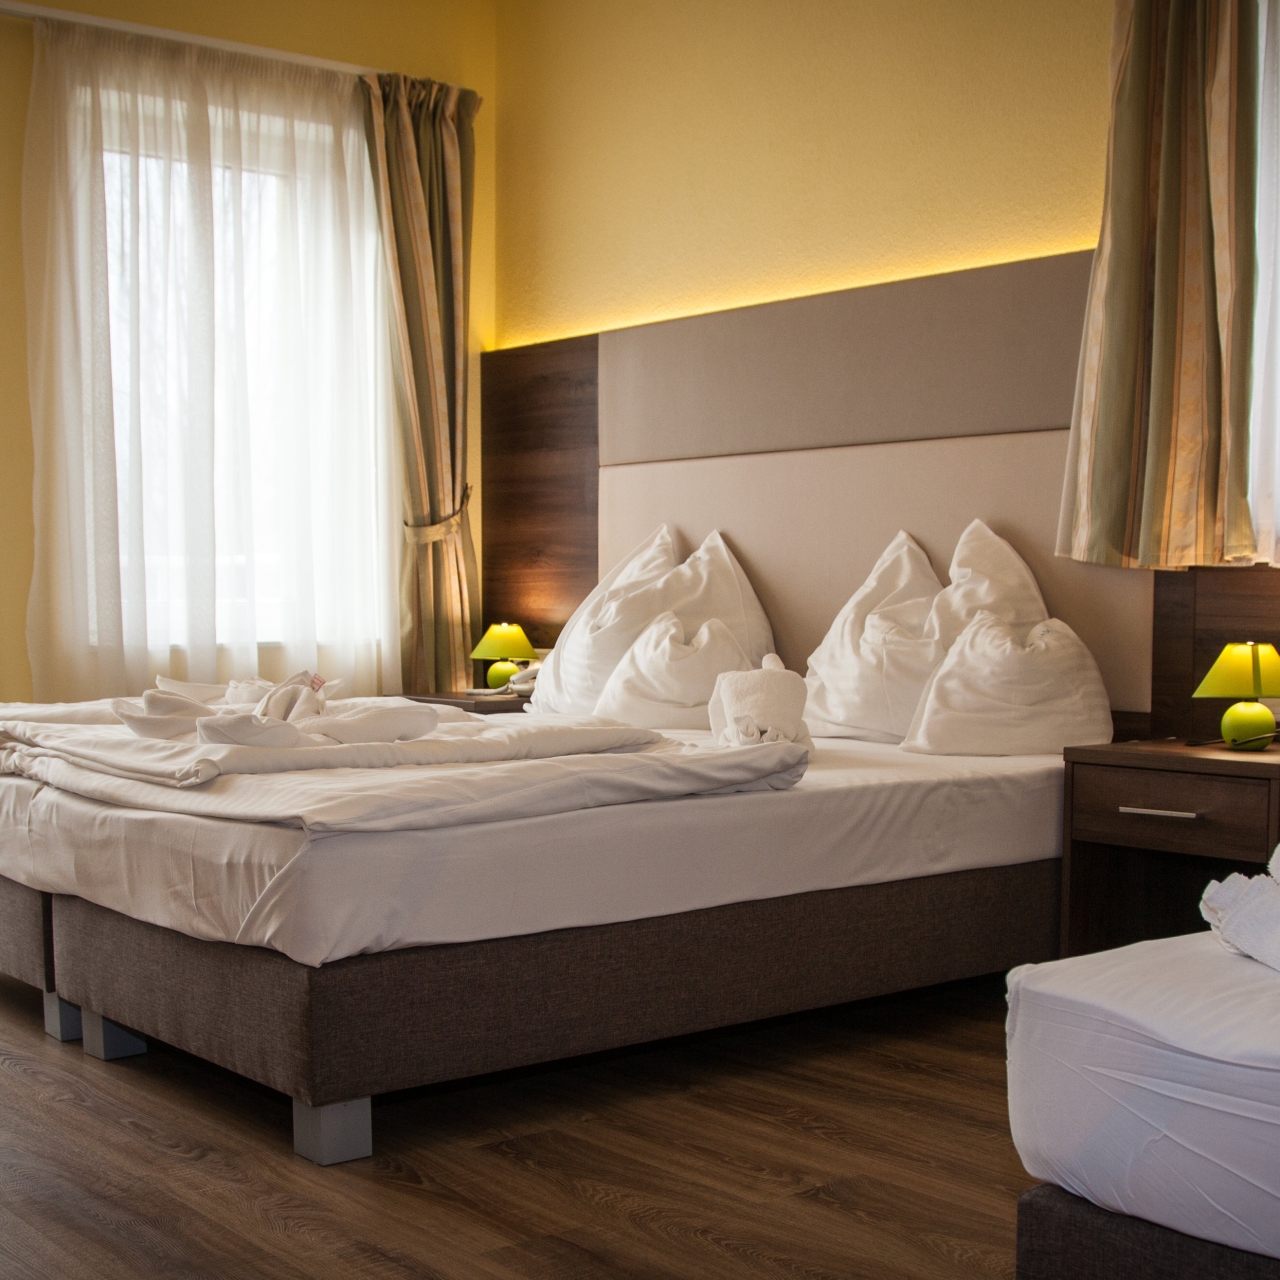 Hotel Jade - Ezüsthíd Hotel in Veszprém bei HRS günstig buchen